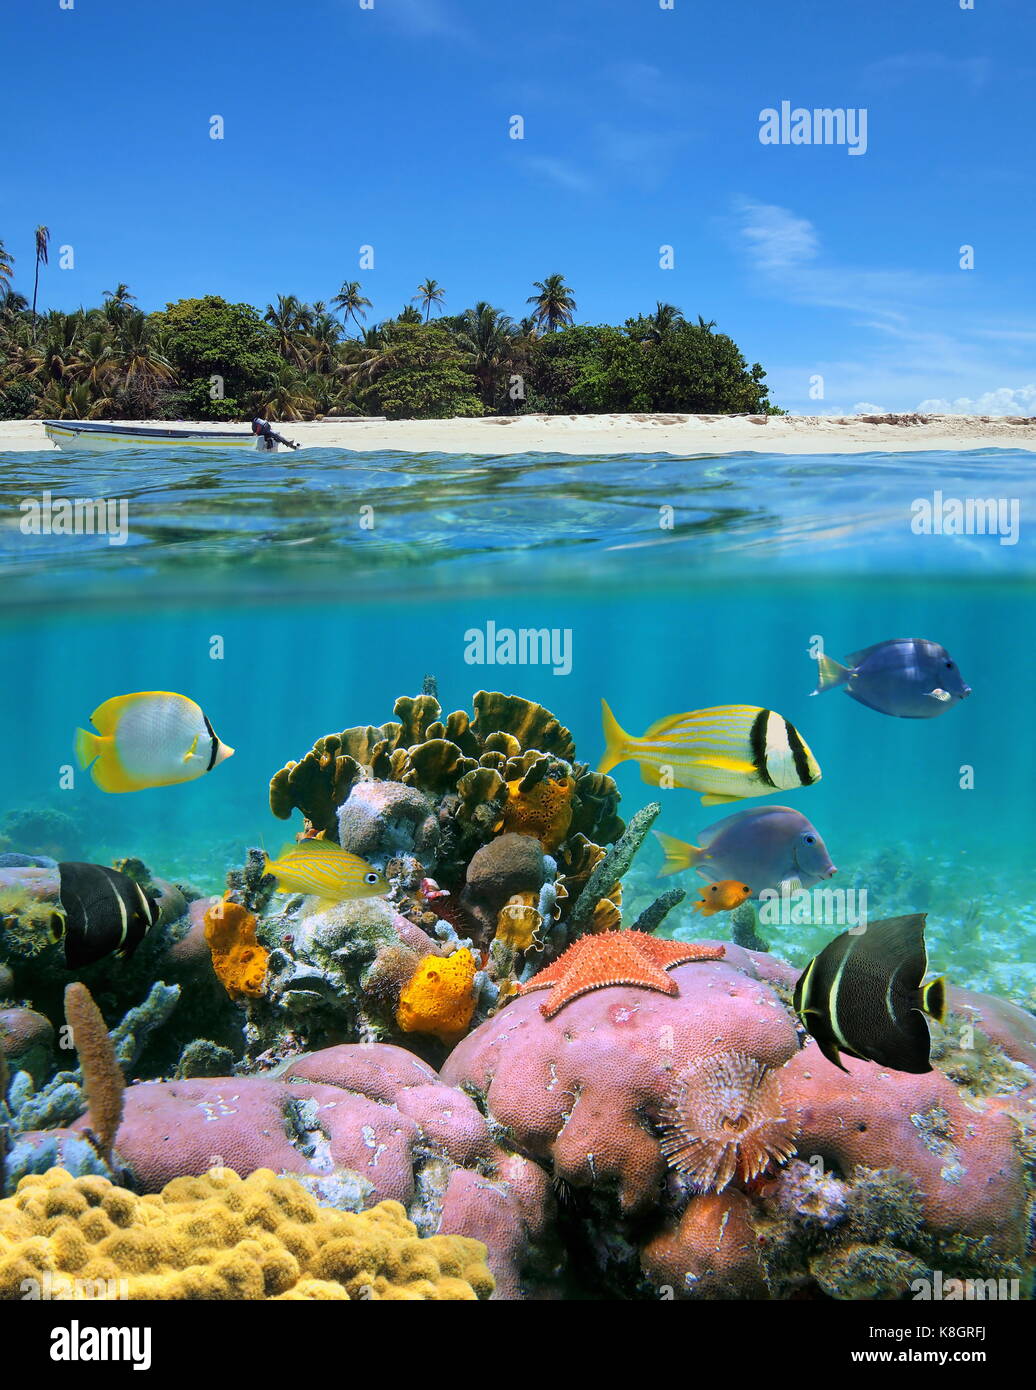 Sur et sous la surface de la mer image fractionnée près d'une île tropicale avec une plage de sable et vie marine colorée avec sous-marines de poissons tropicaux Banque D'Images